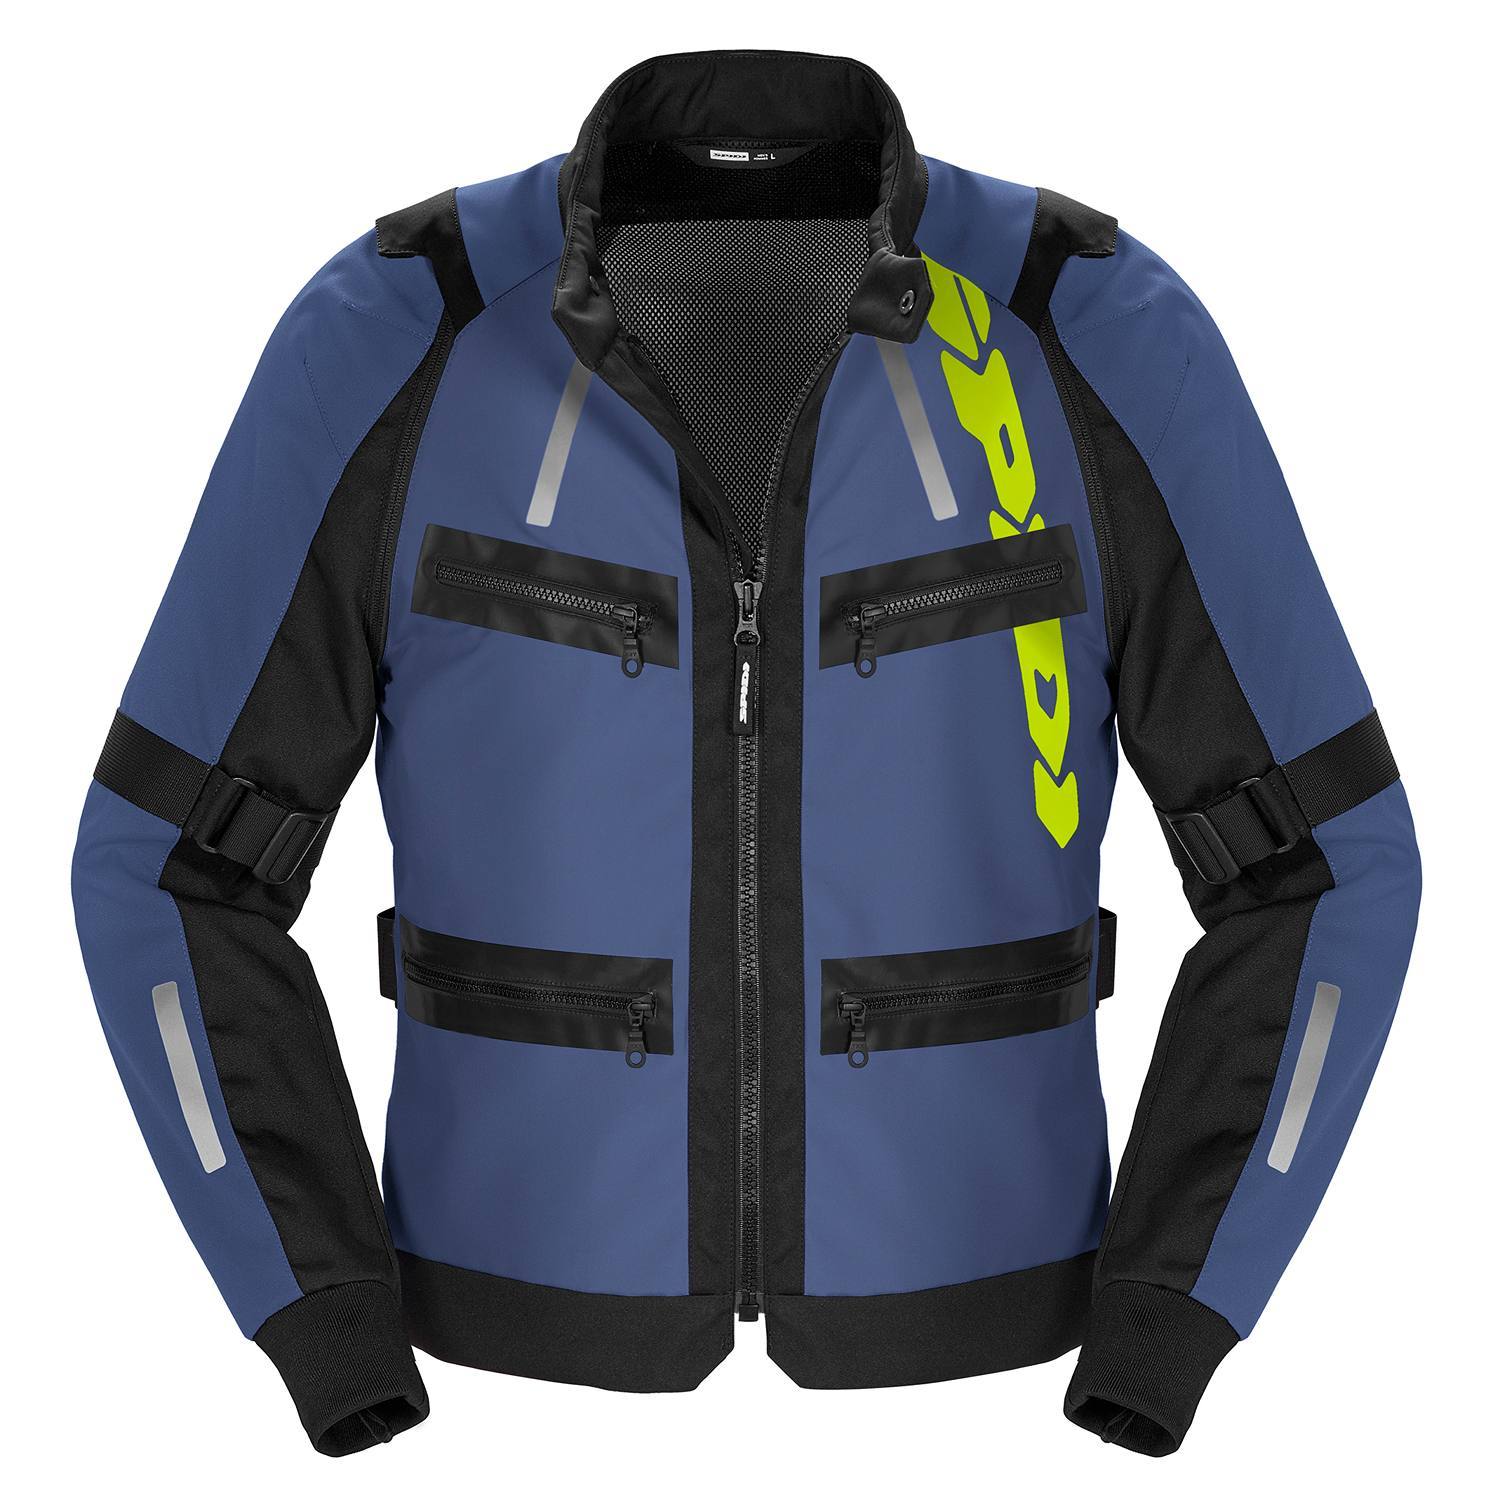 Image of Spidi Enduro Pro Jacket Blue Yellow Size S ID 8030161485059